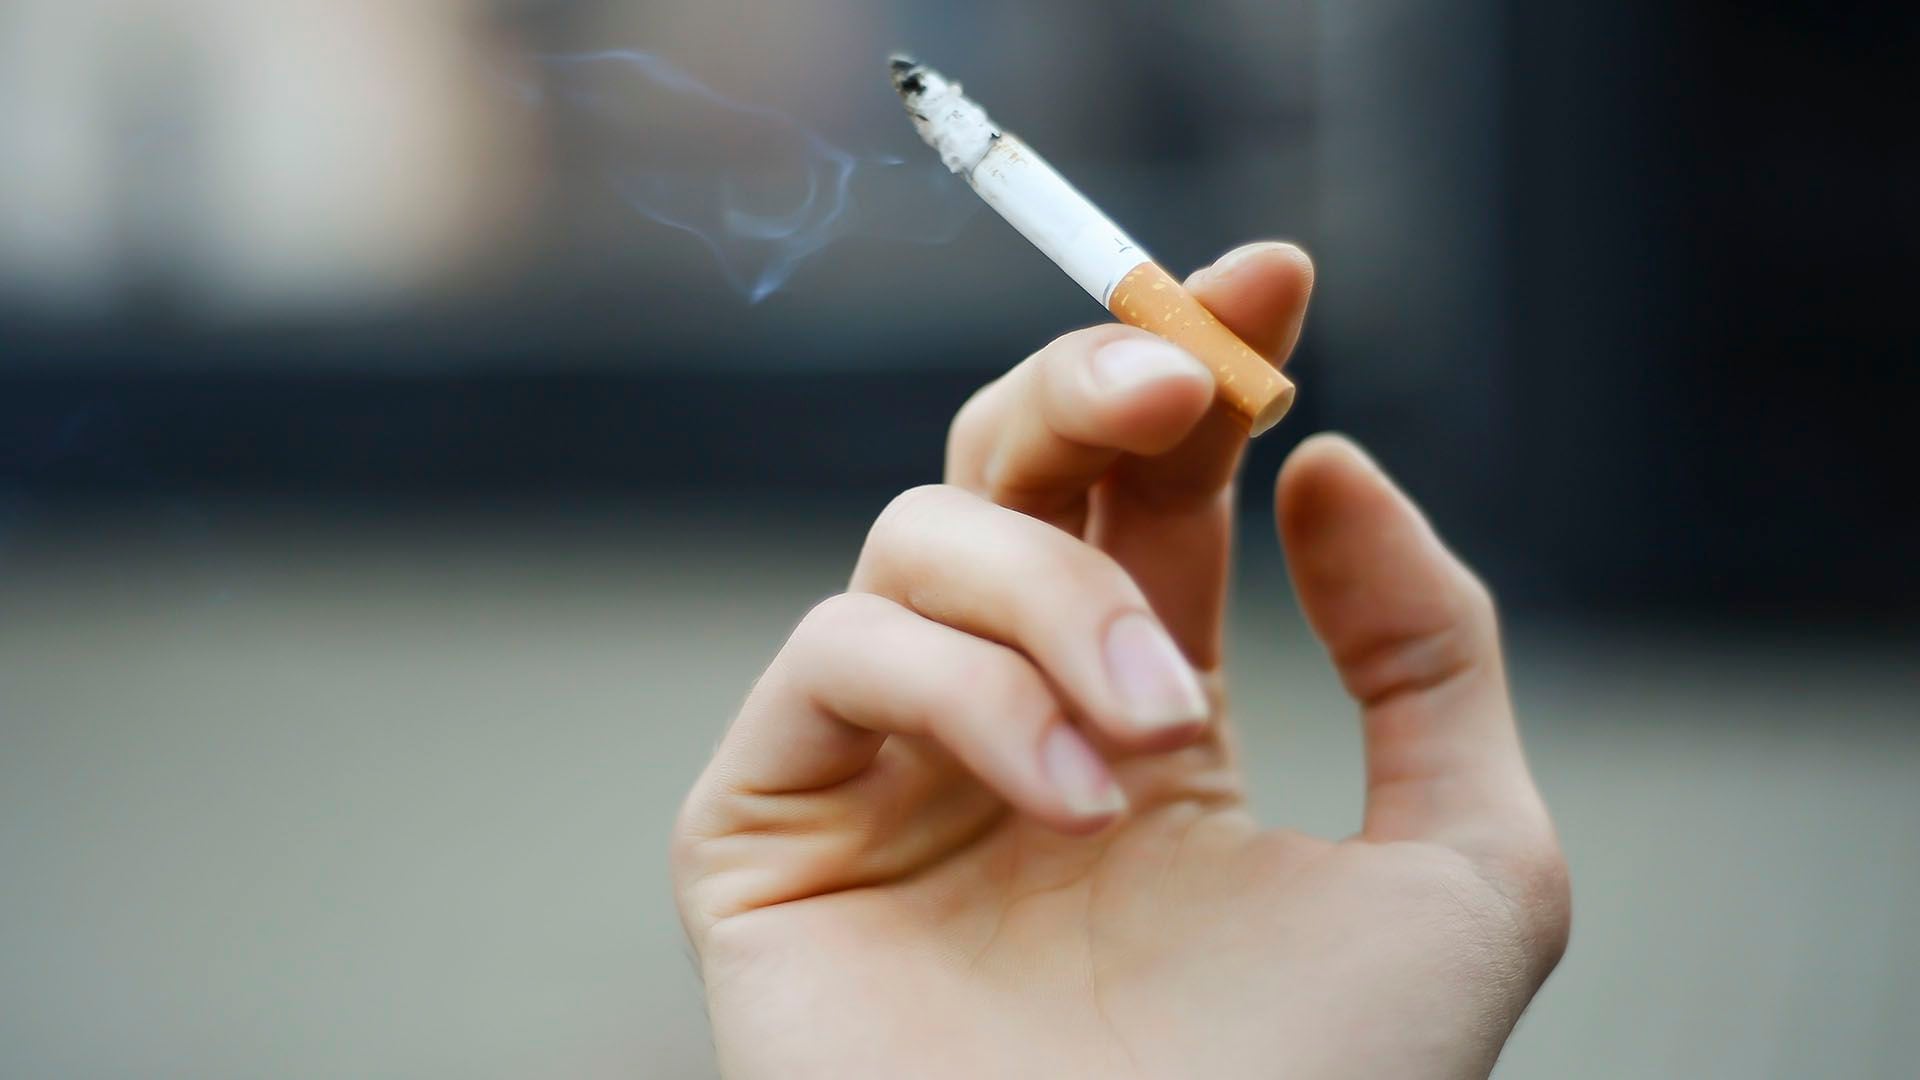 Fumar es, por mucho, el principal factor de riesgo para el cáncer de pulmón (Getty)

